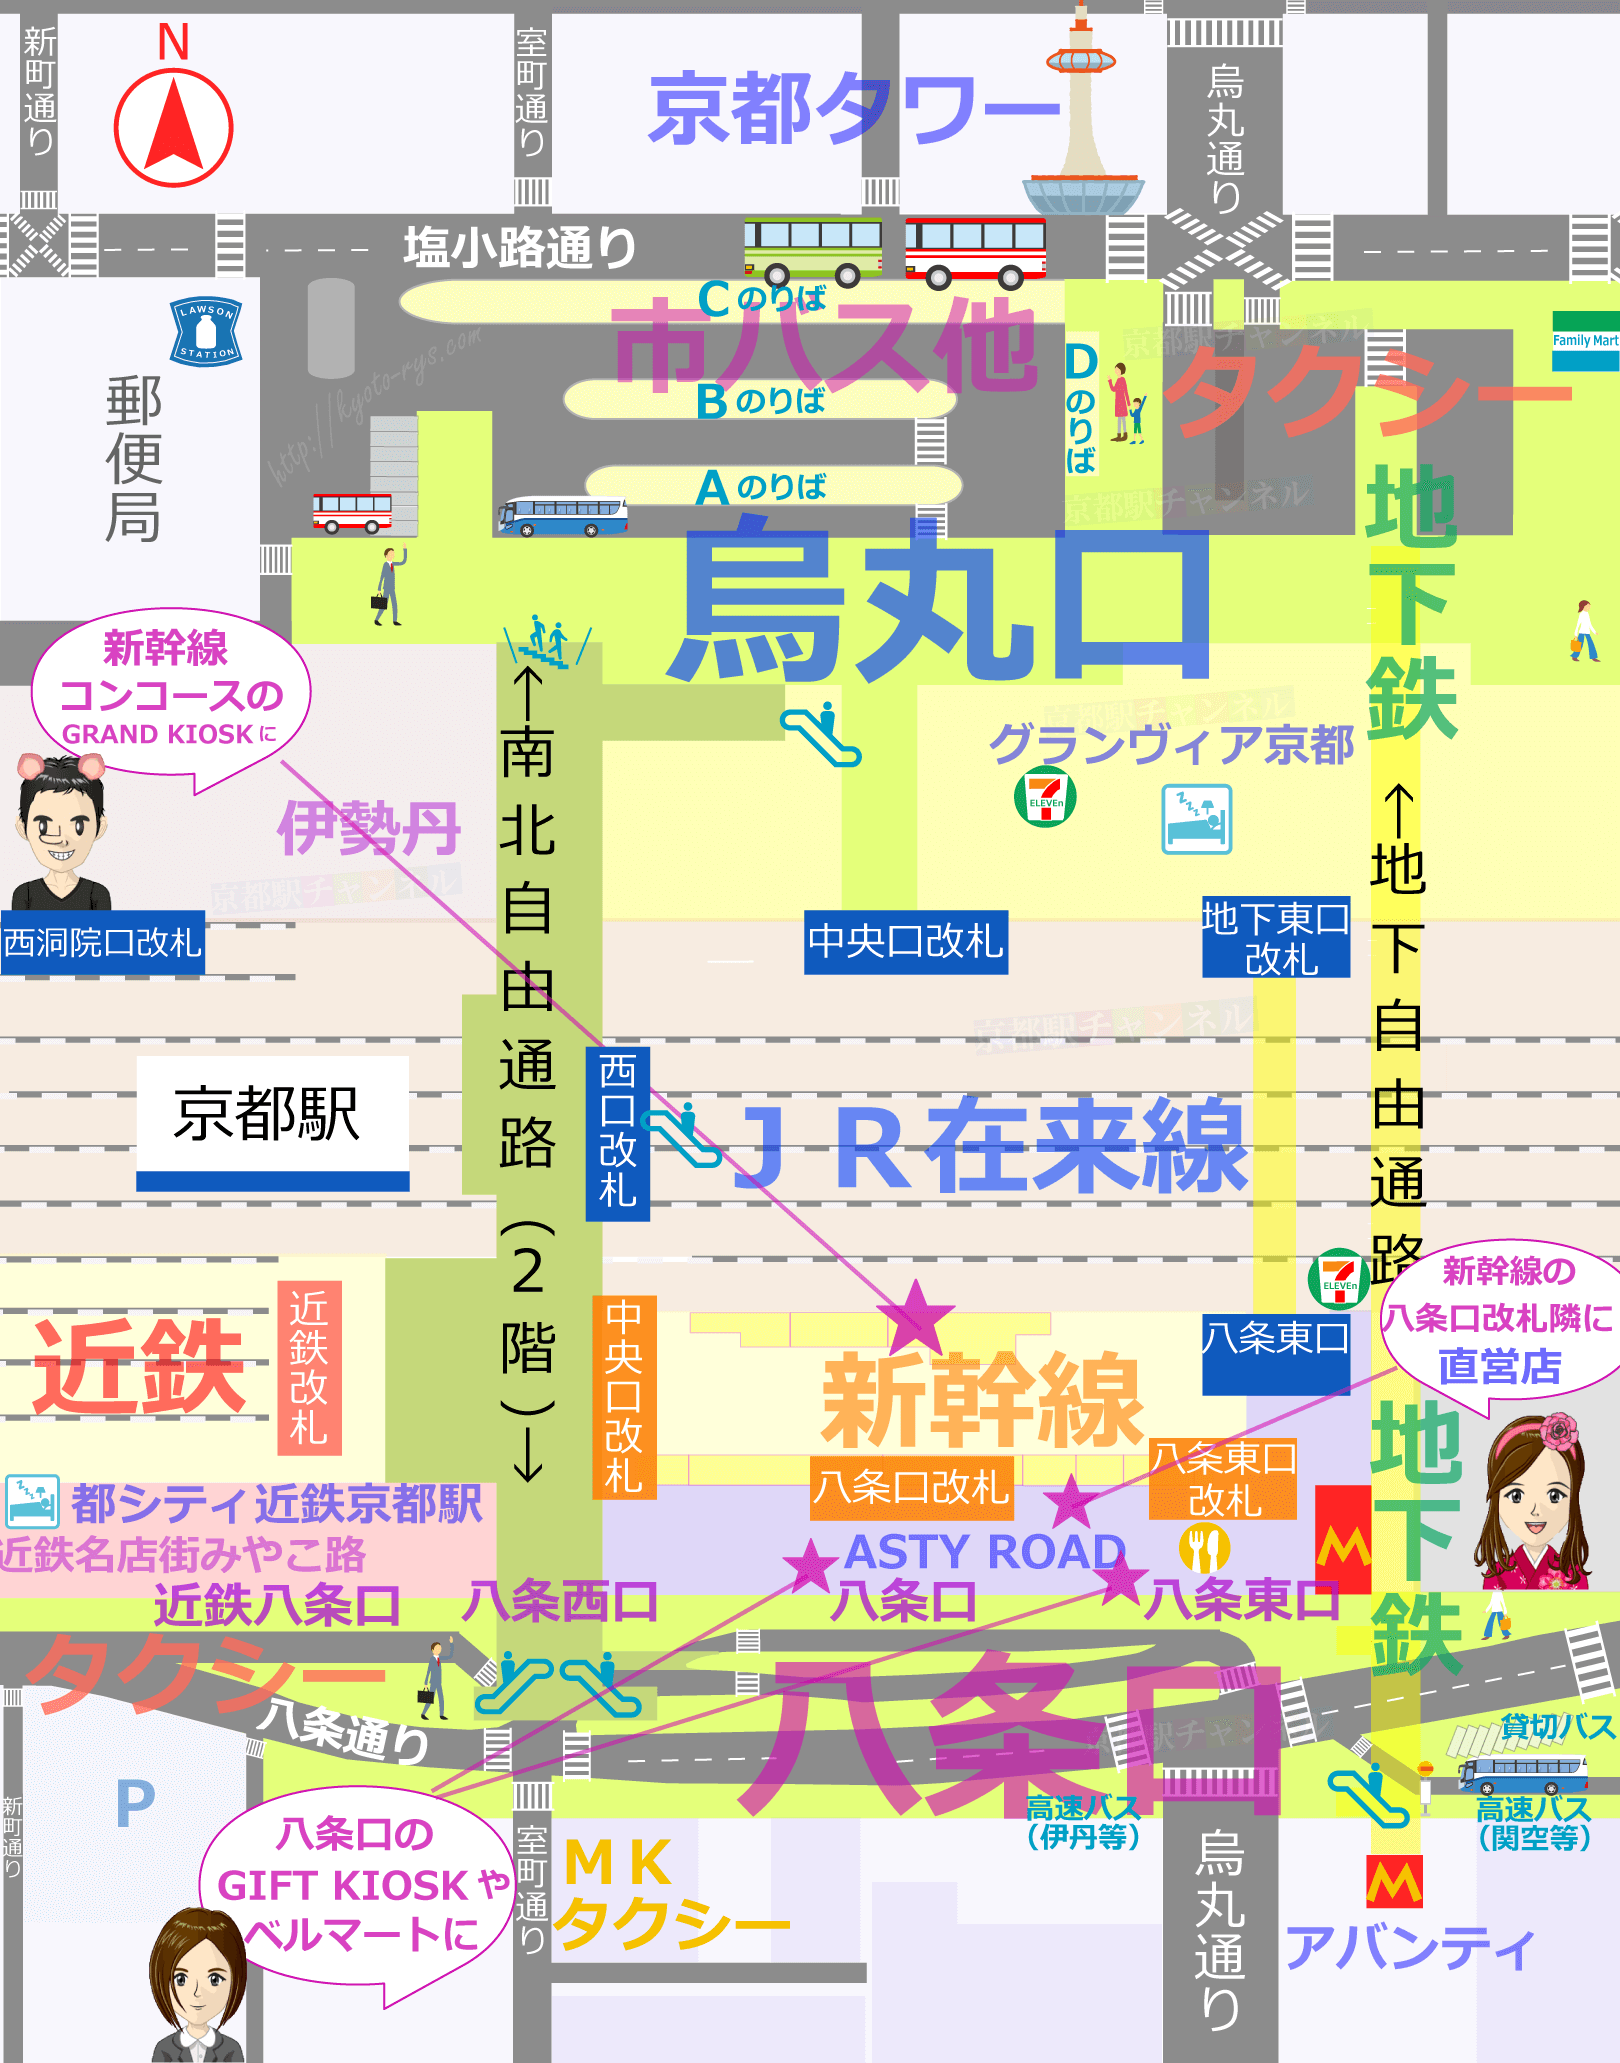 祇園辻利の抹茶アイス販売マップ